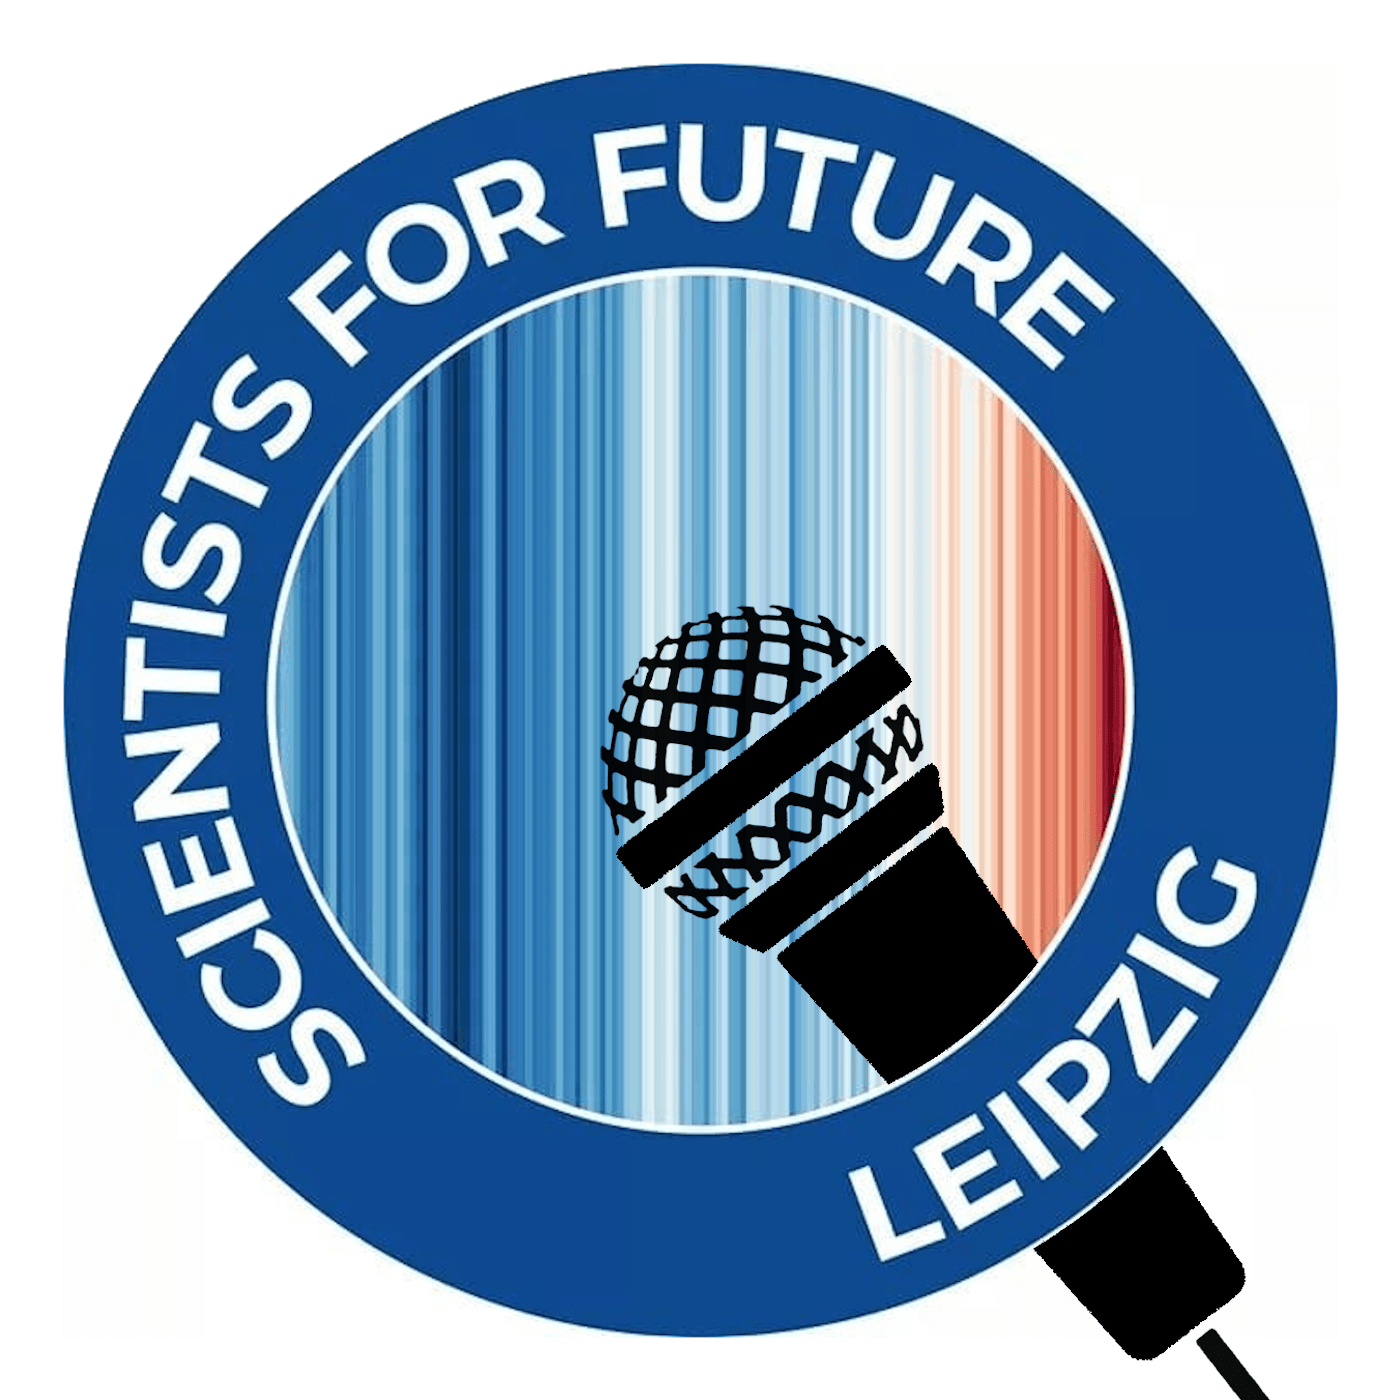 Im Hintergrund: Warming Stripes für Leipzig. Darüber das Logo Scientists For Future Leipzig plus ein Icon von einem Mikrofon (in schwarz).